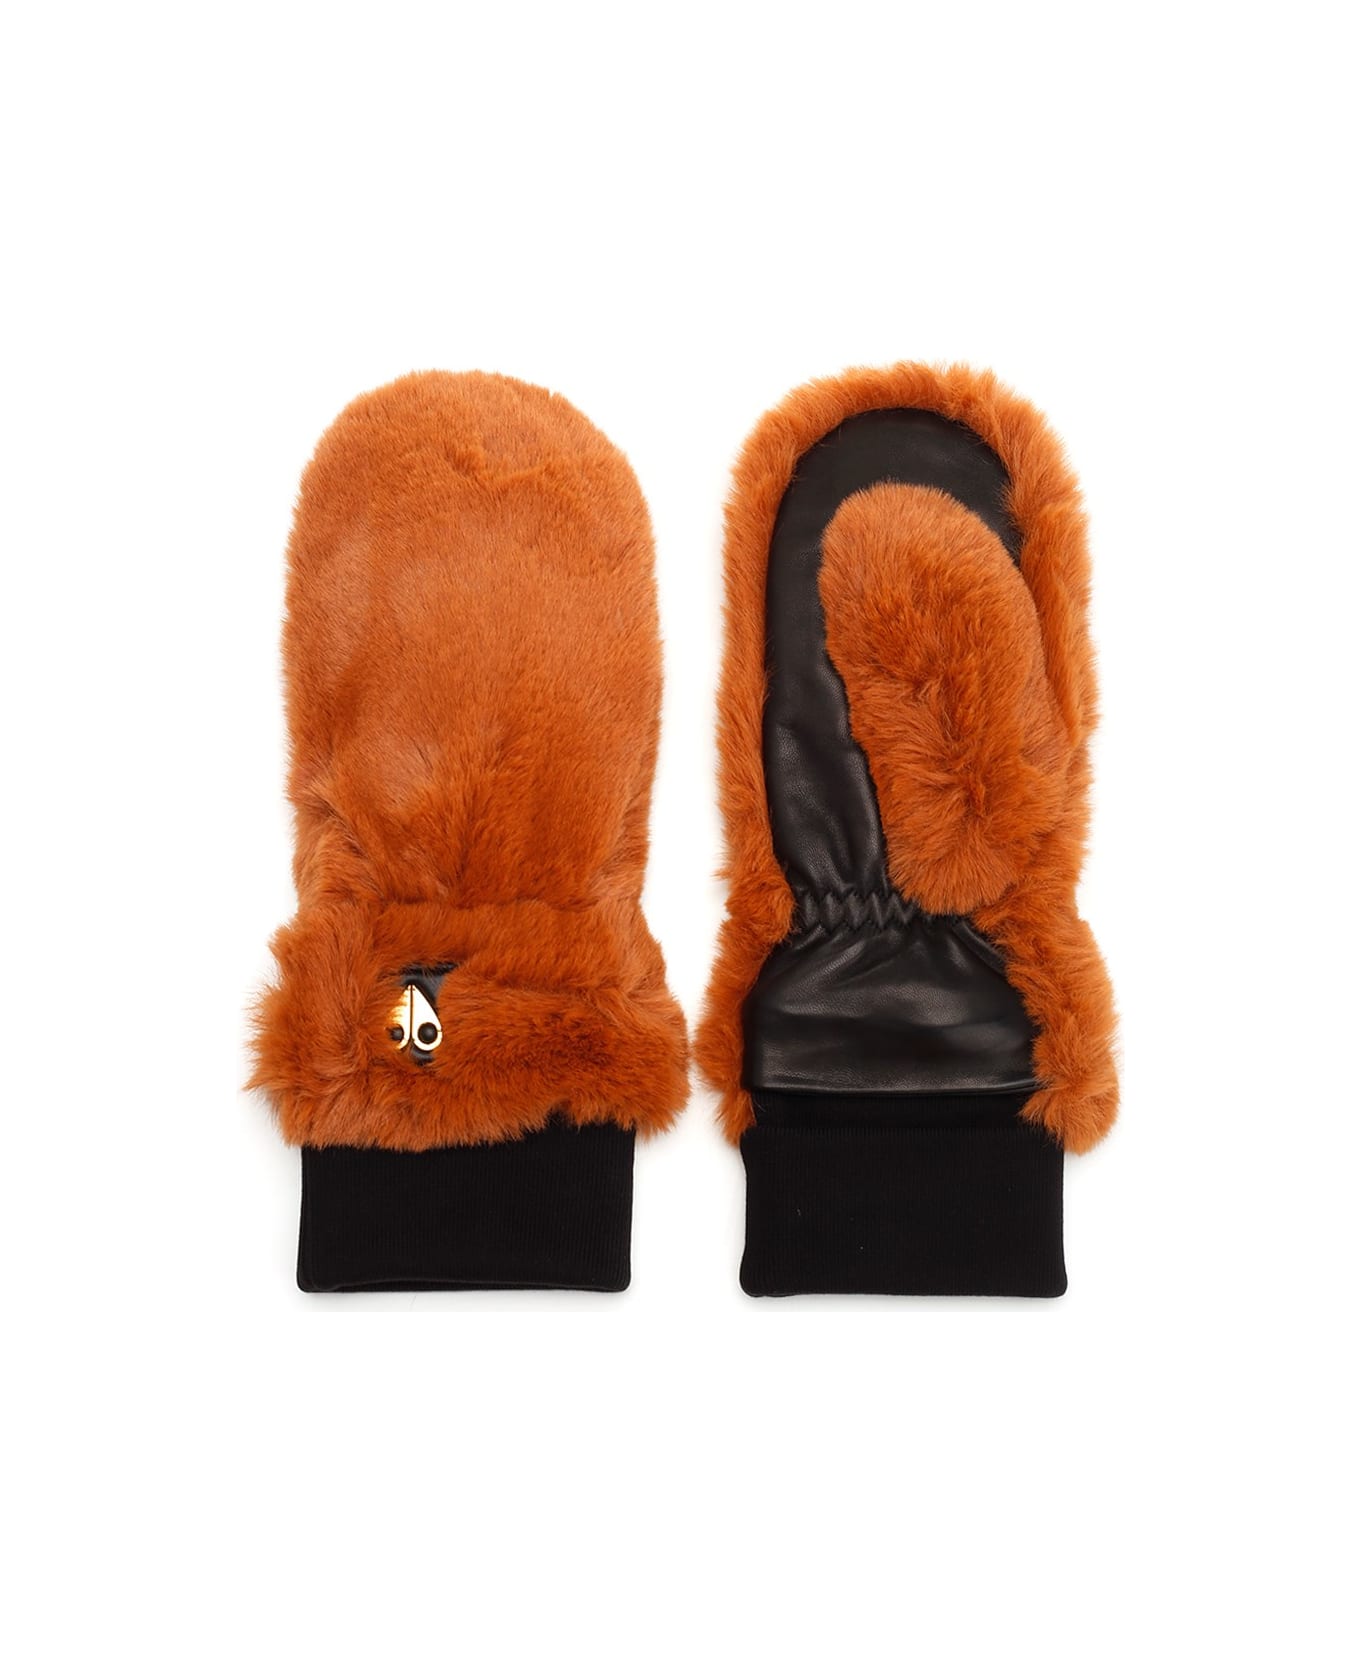 Moose Knuckles Gloves In Eco Fur - Brown